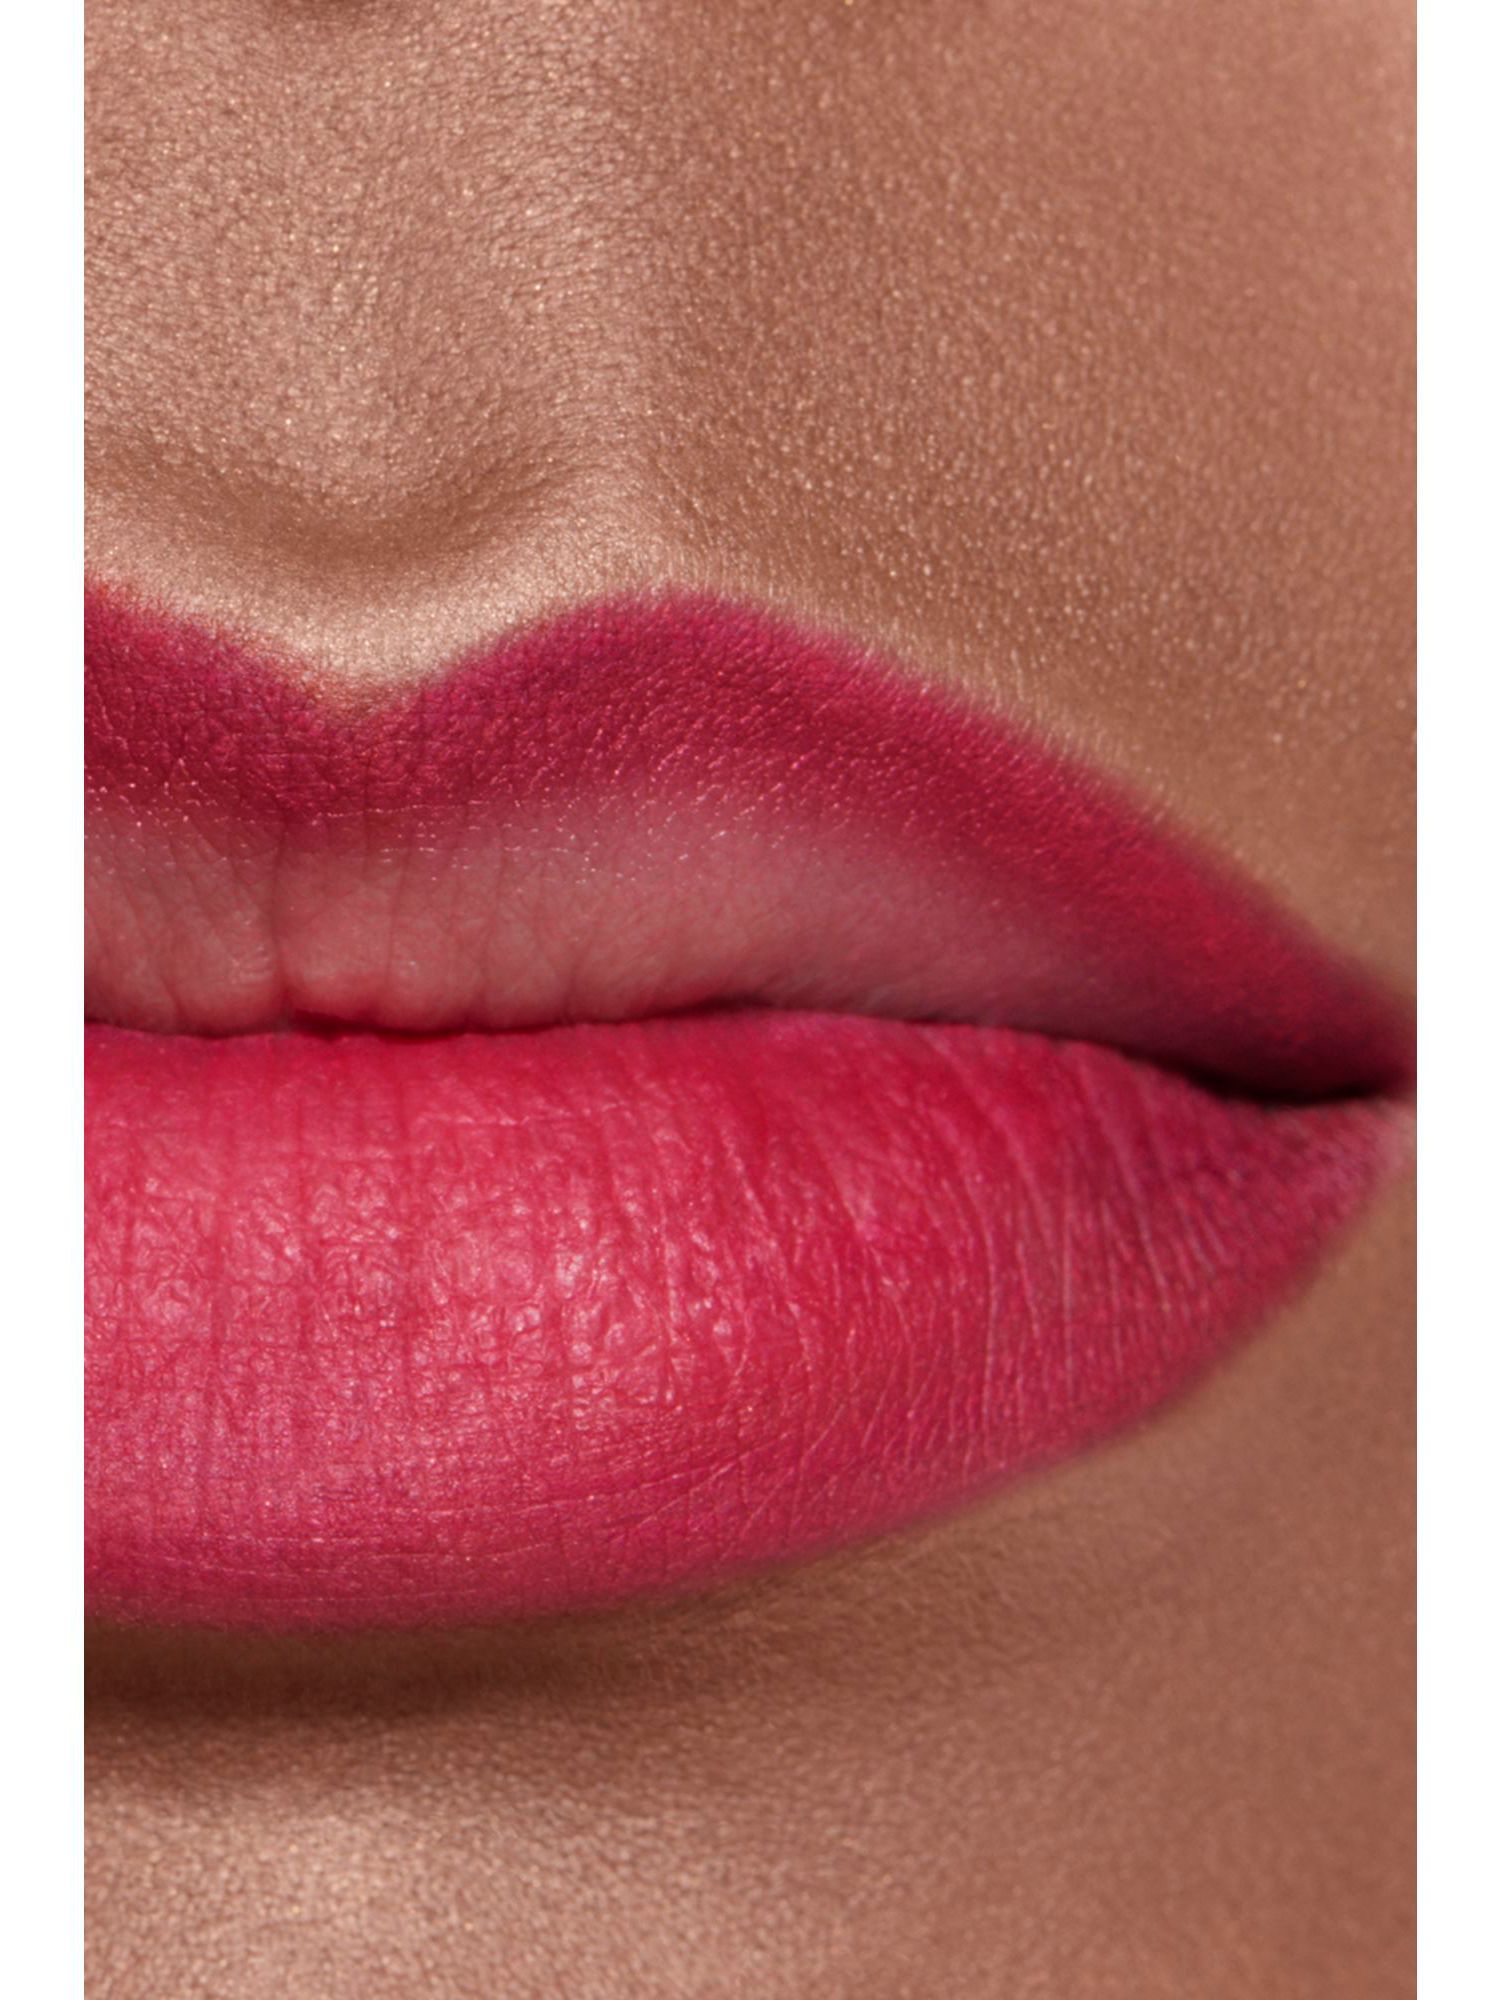 Chanel lip liner in 158 rose natural